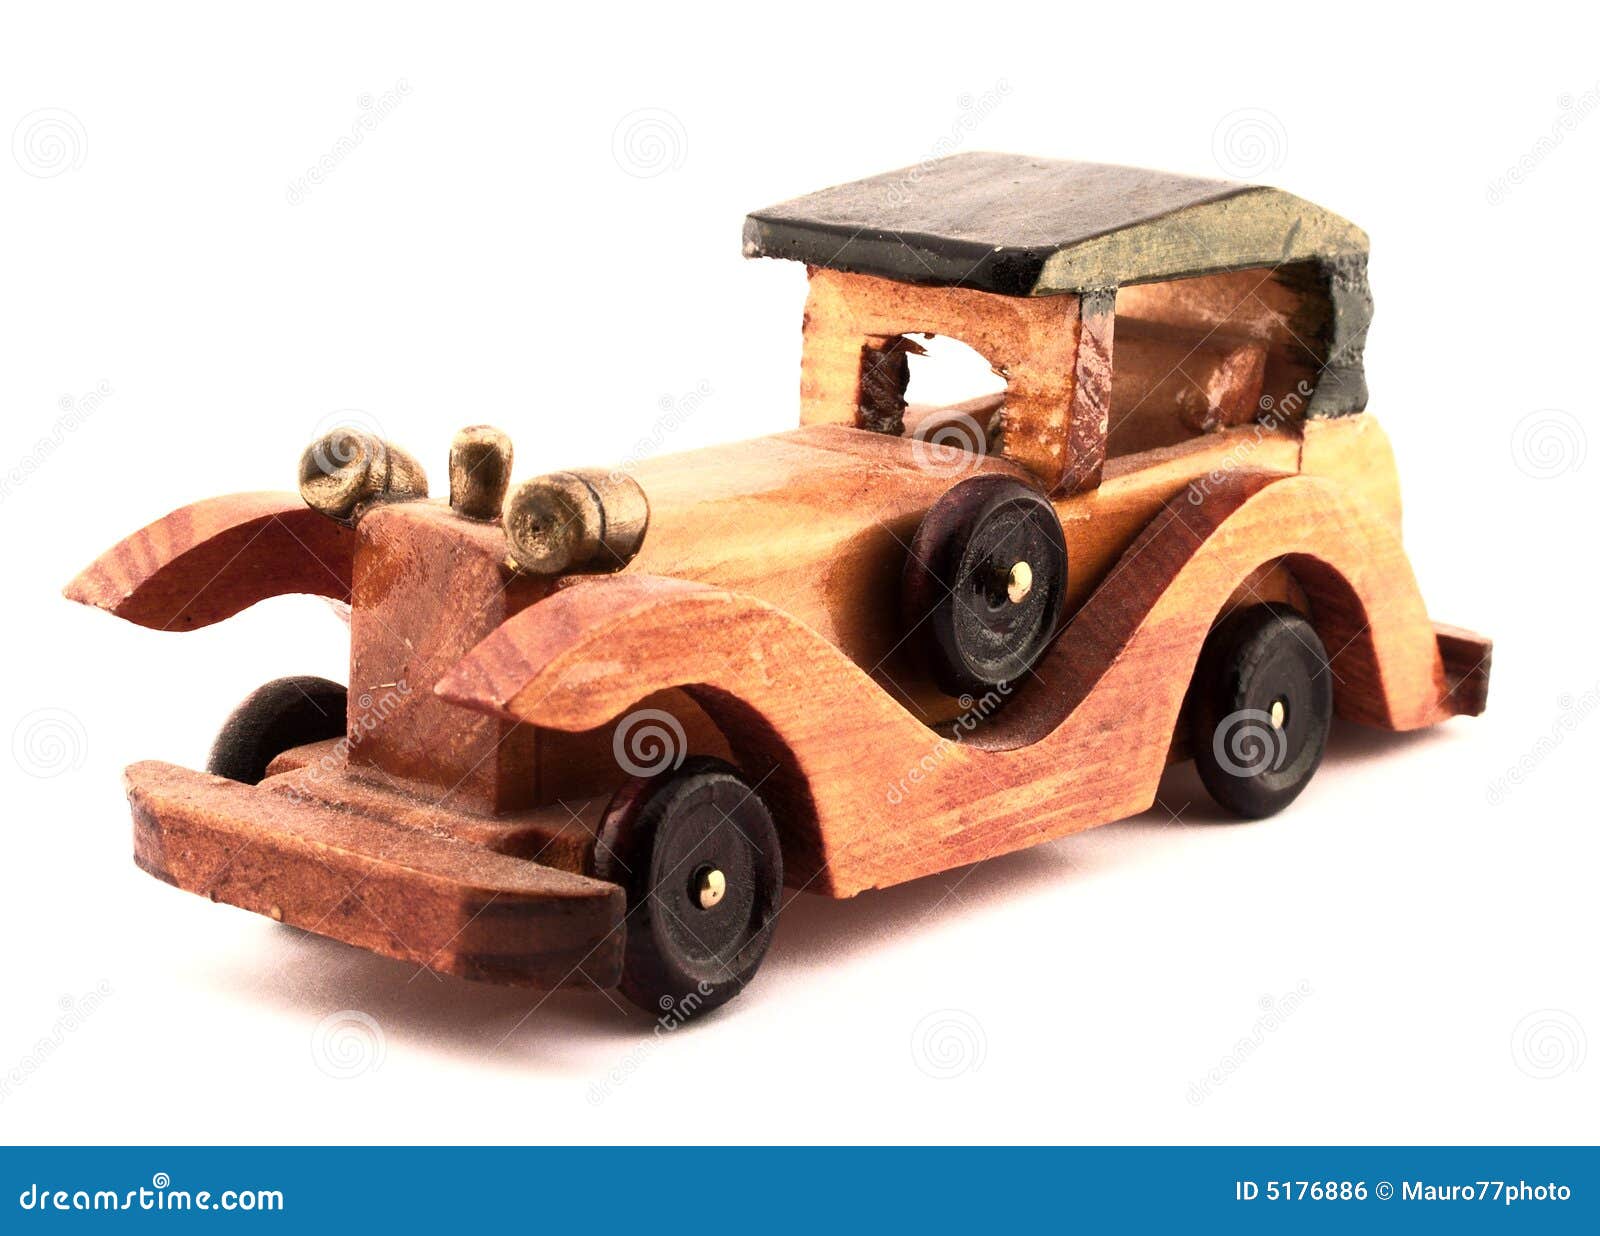 木质火箭车 儿童木头玩具车模型 汽车工艺品景区热销玩具家居摆件-阿里巴巴